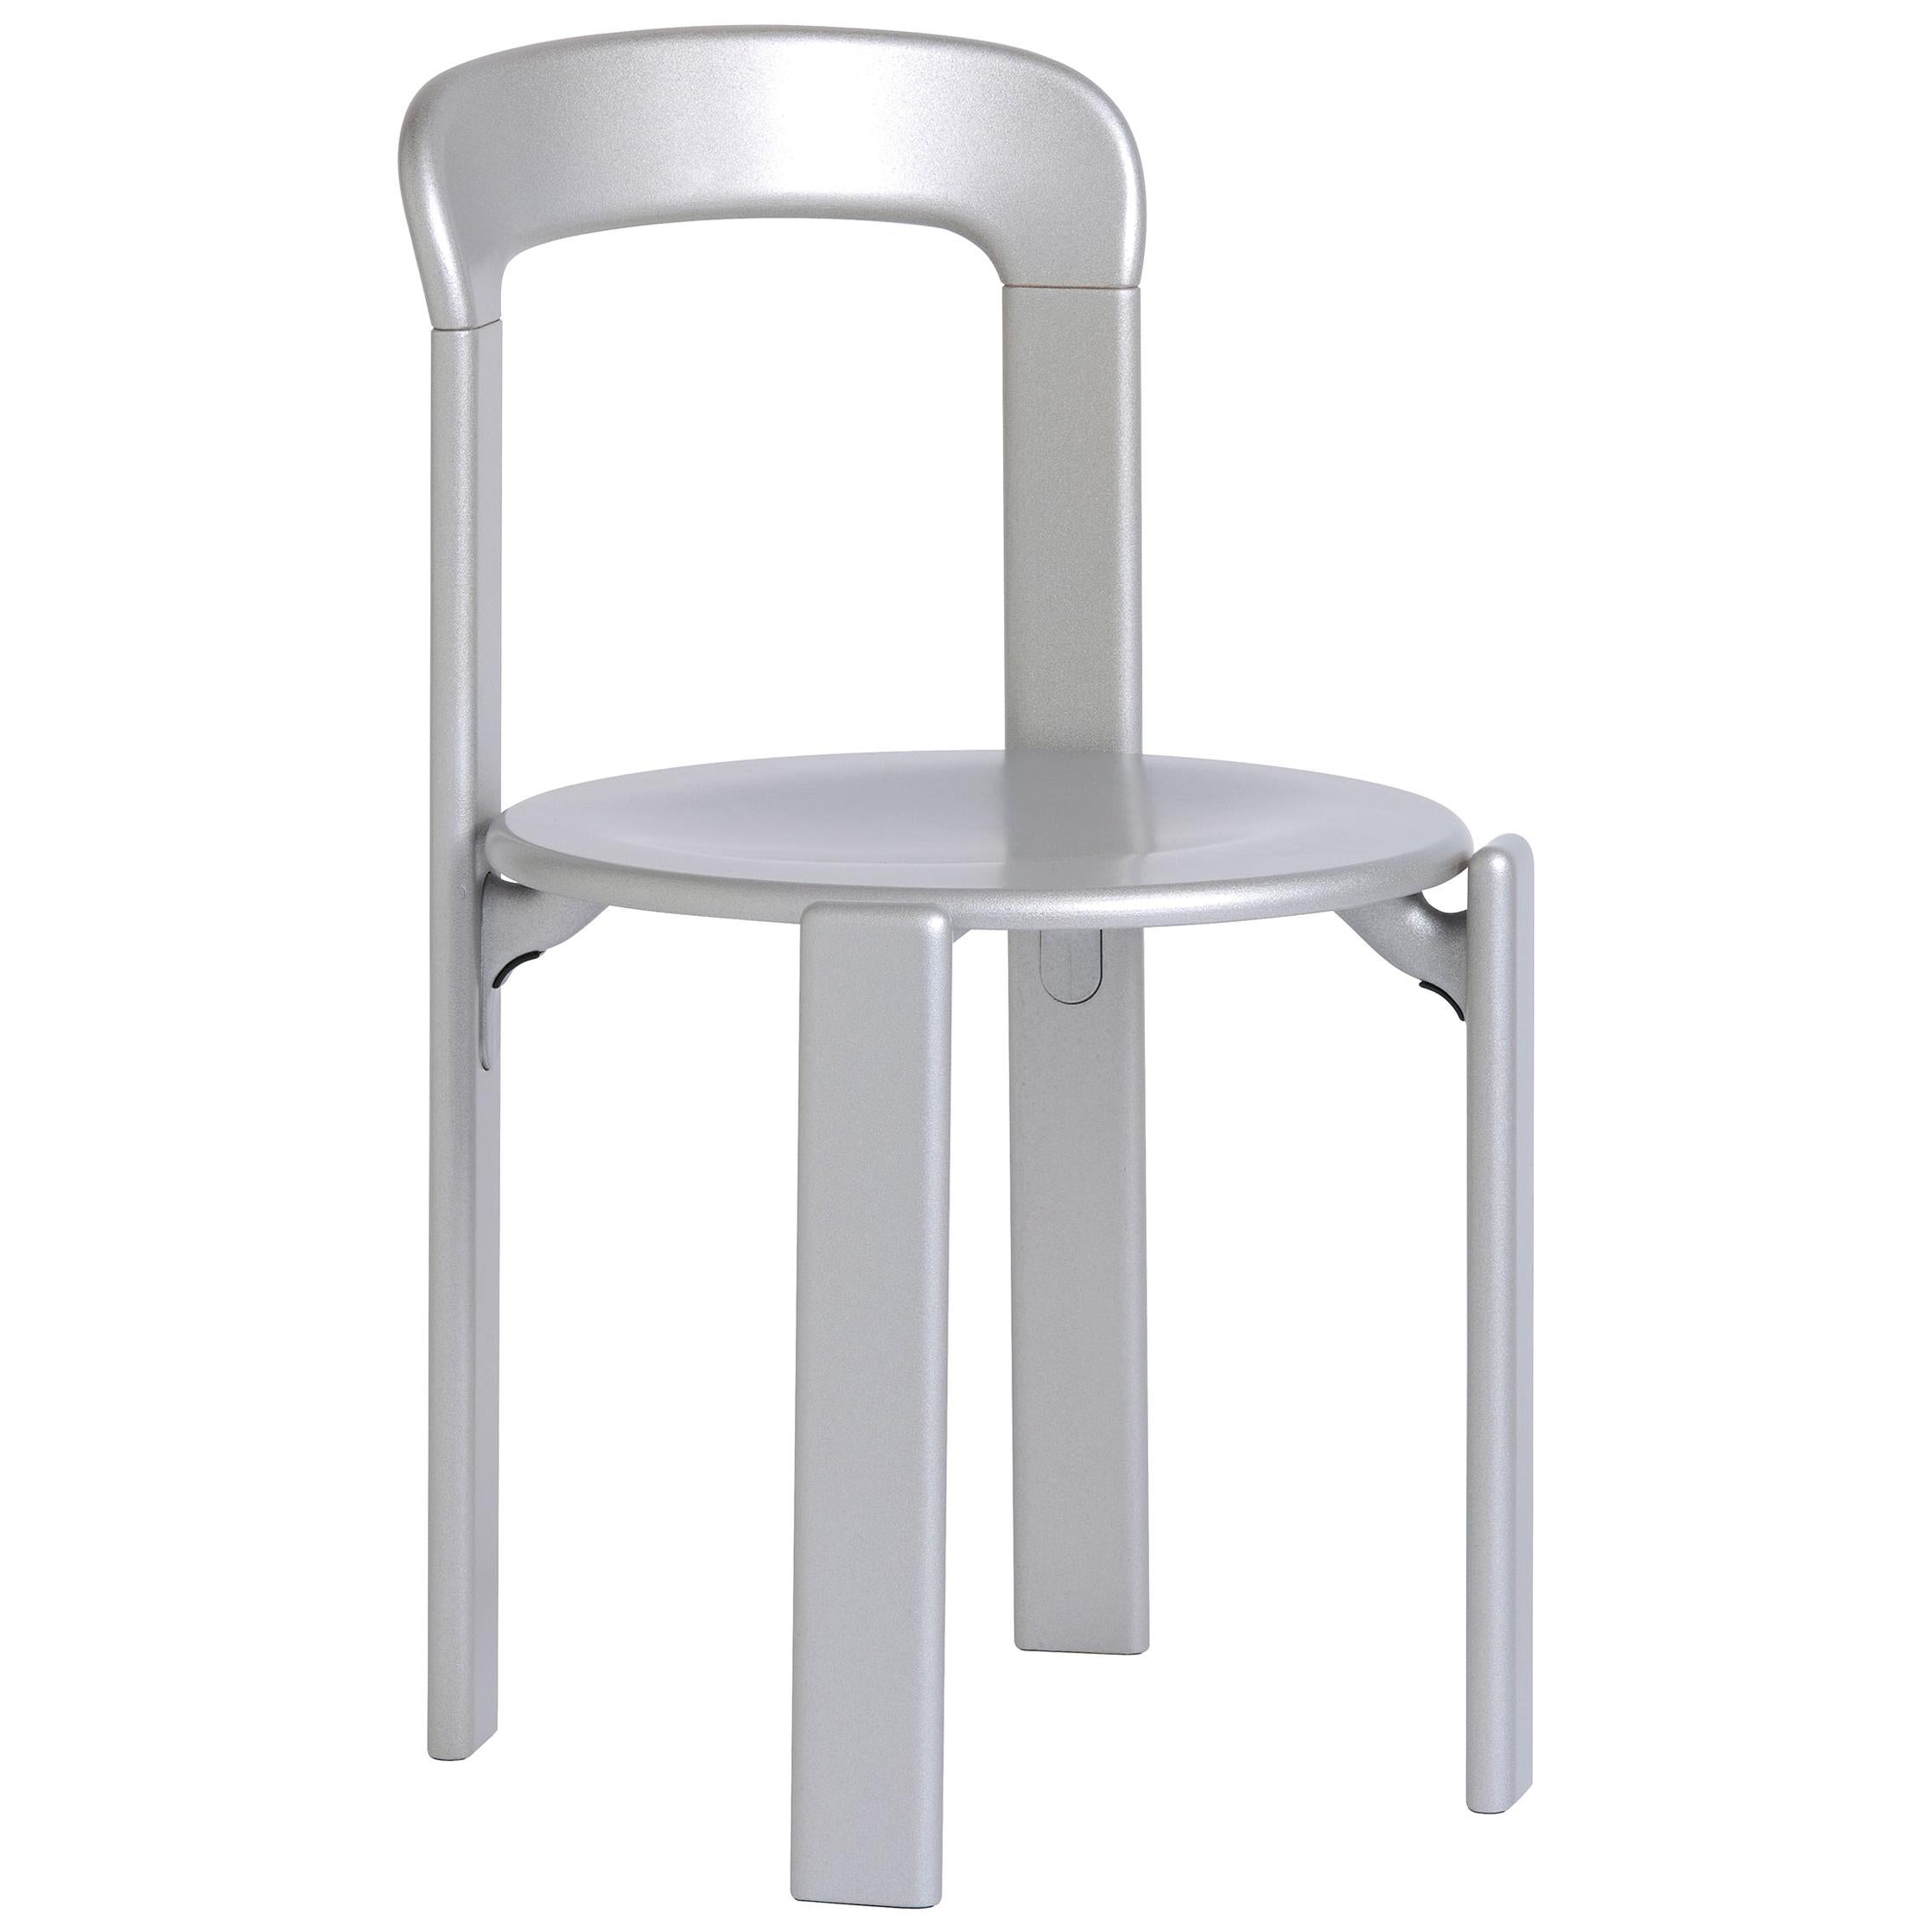 Mid-Century Modern, Rey Silver Chair by Bruno Rey, Design 1971